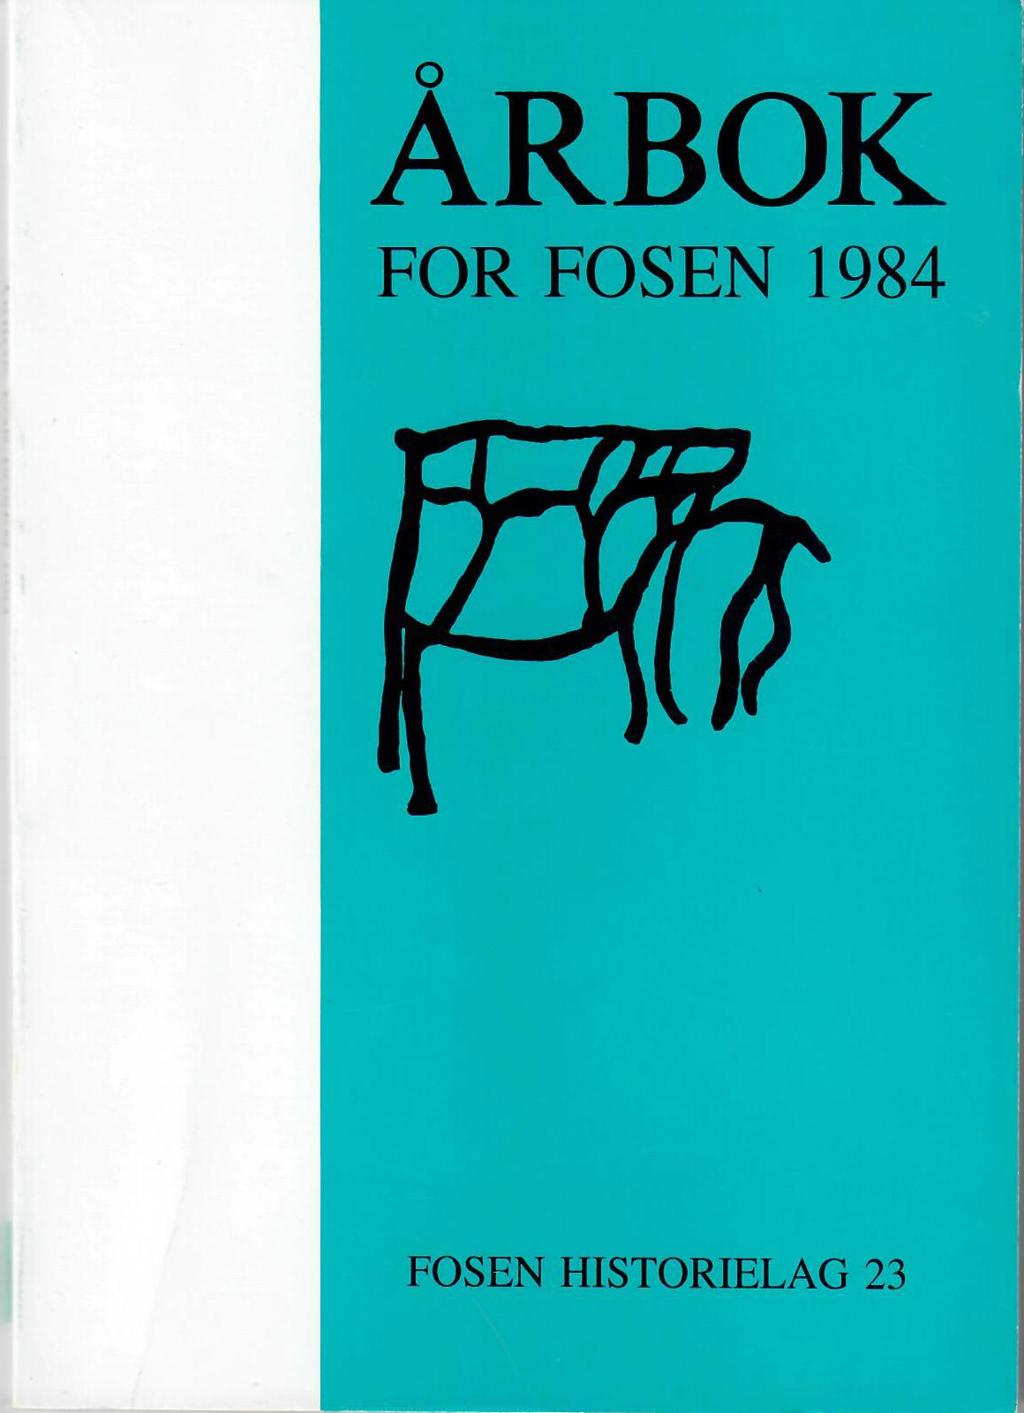 Årbok 1984